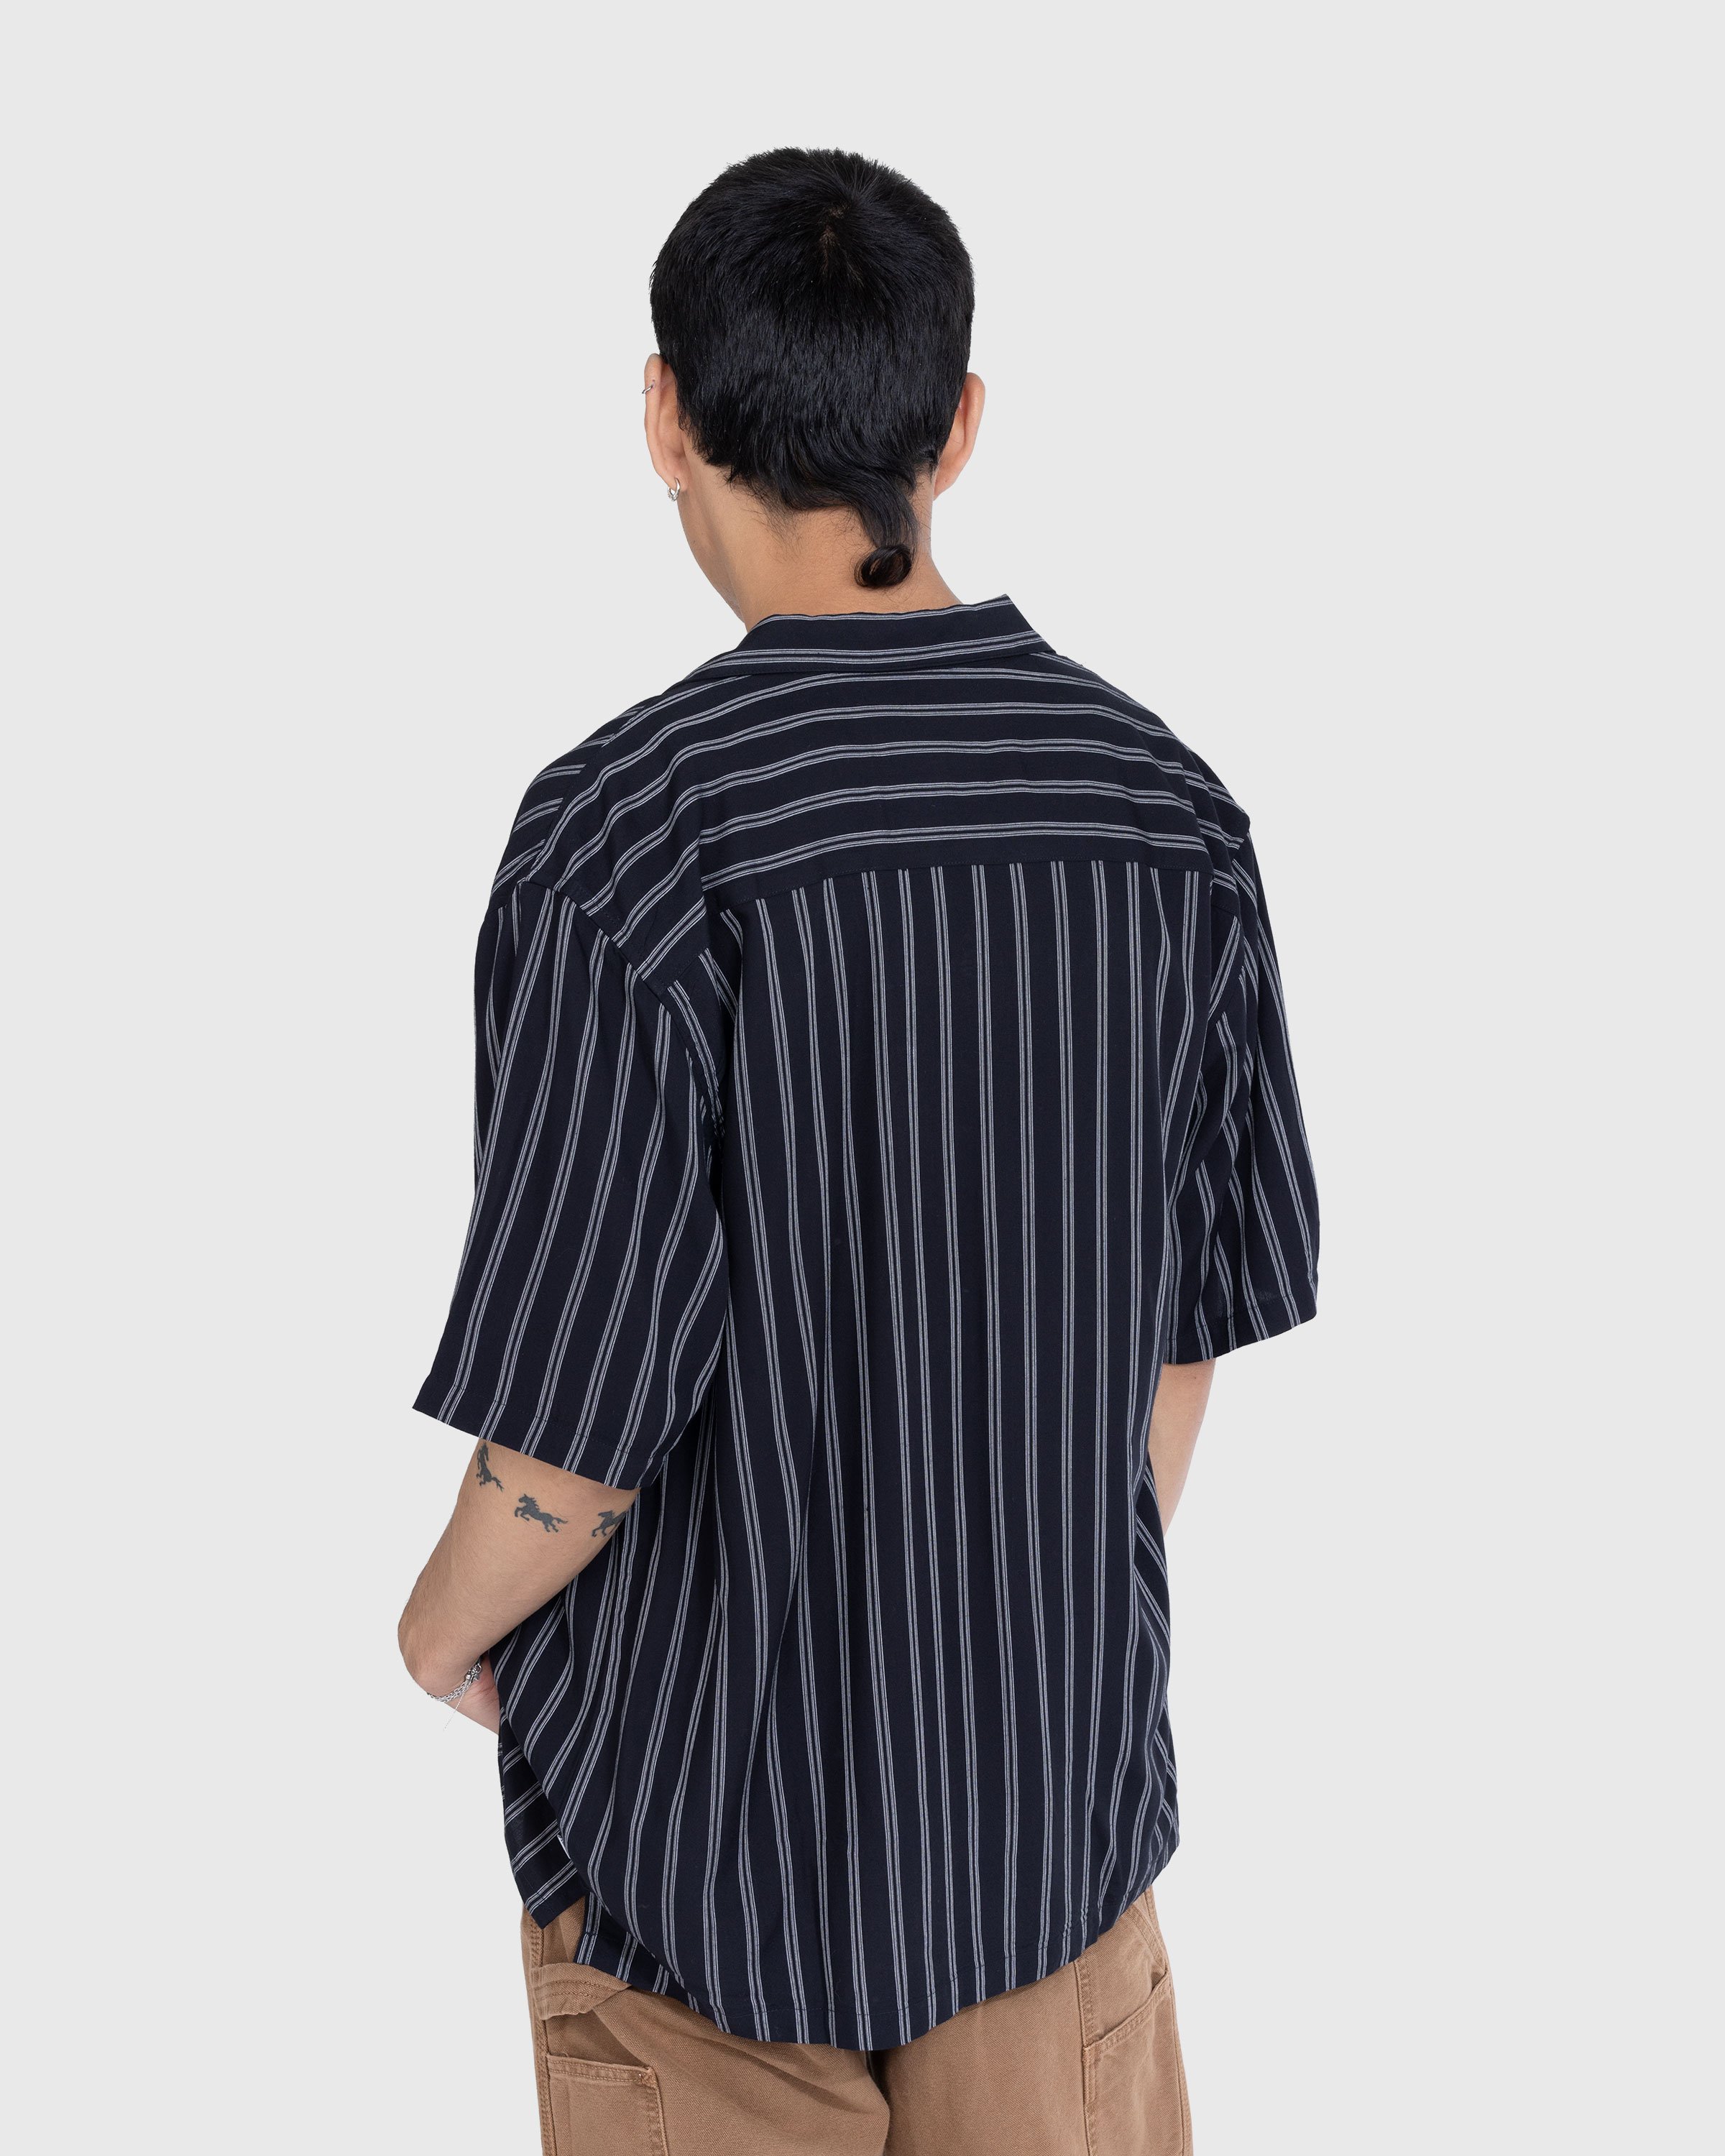 Carhartt WIP - Reyes Stripe Shirt Black - Clothing - Black - Image 4